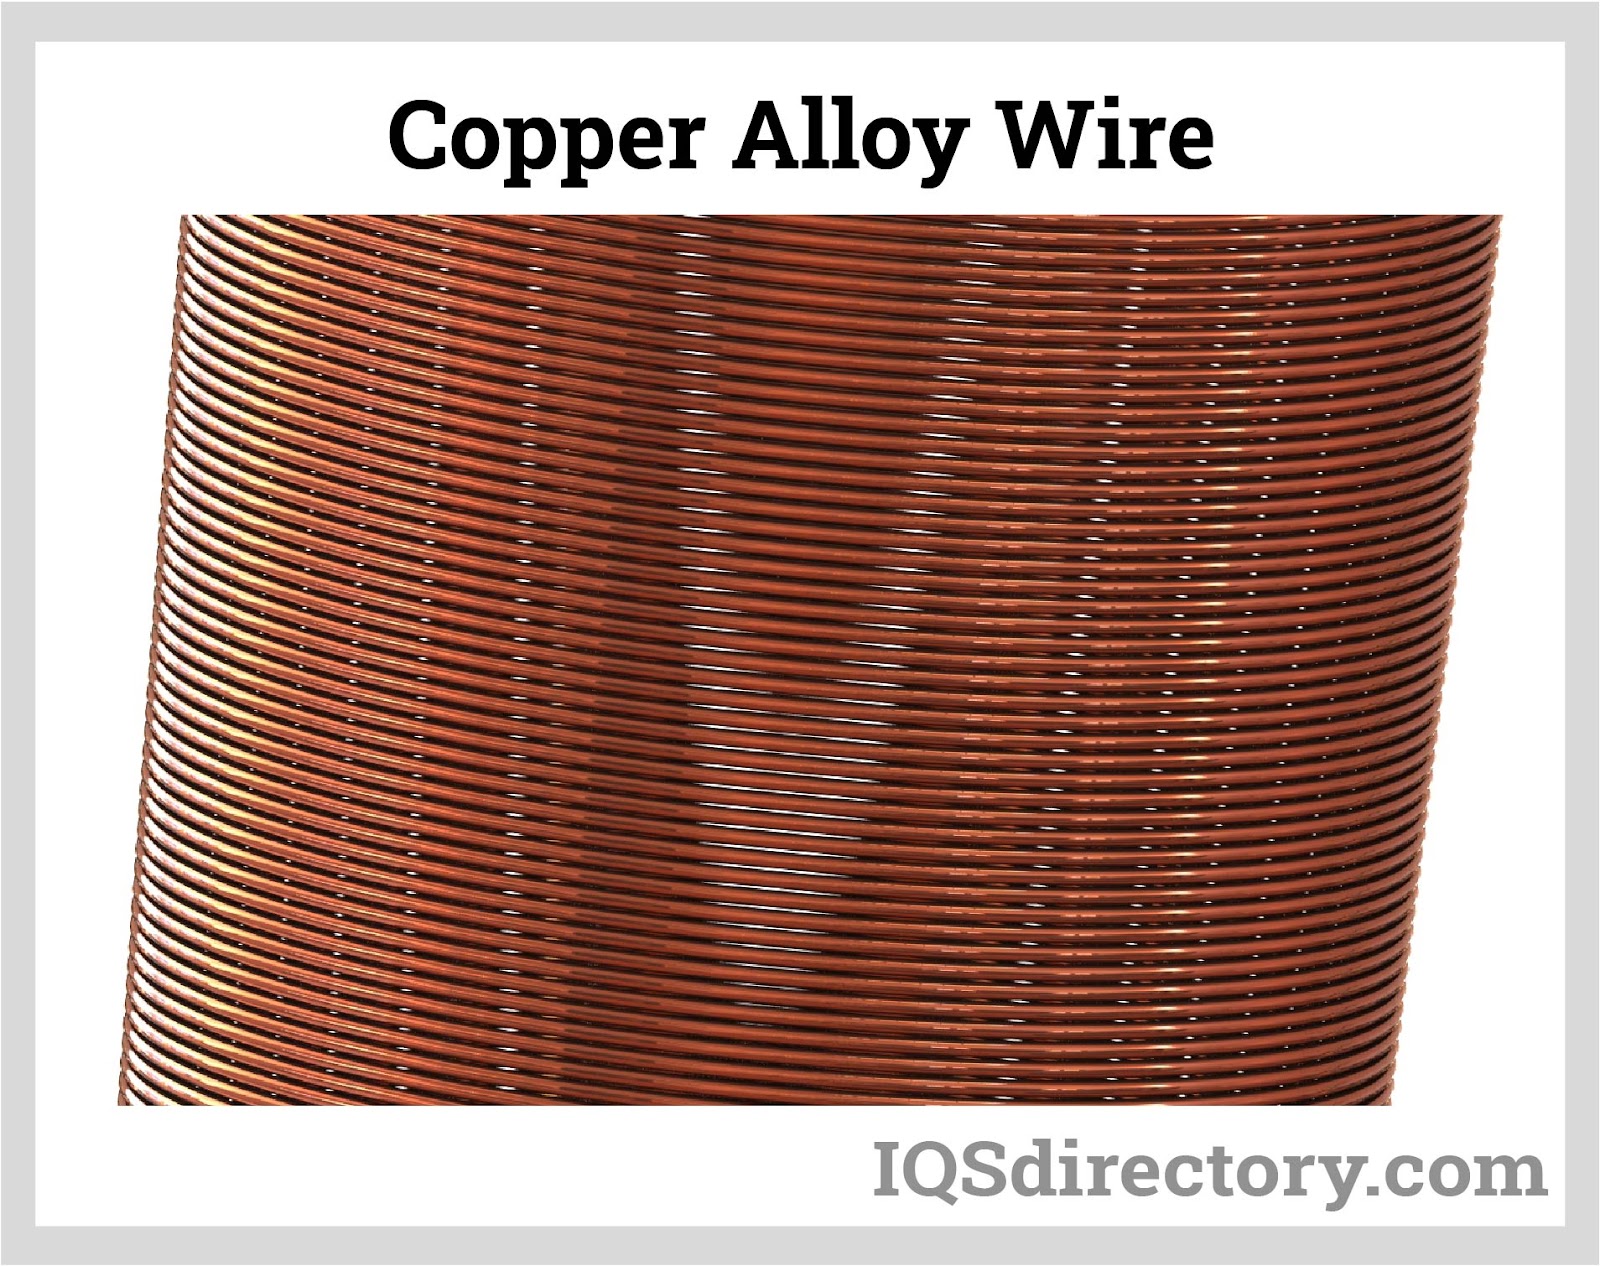  Copper-Alloy Wire